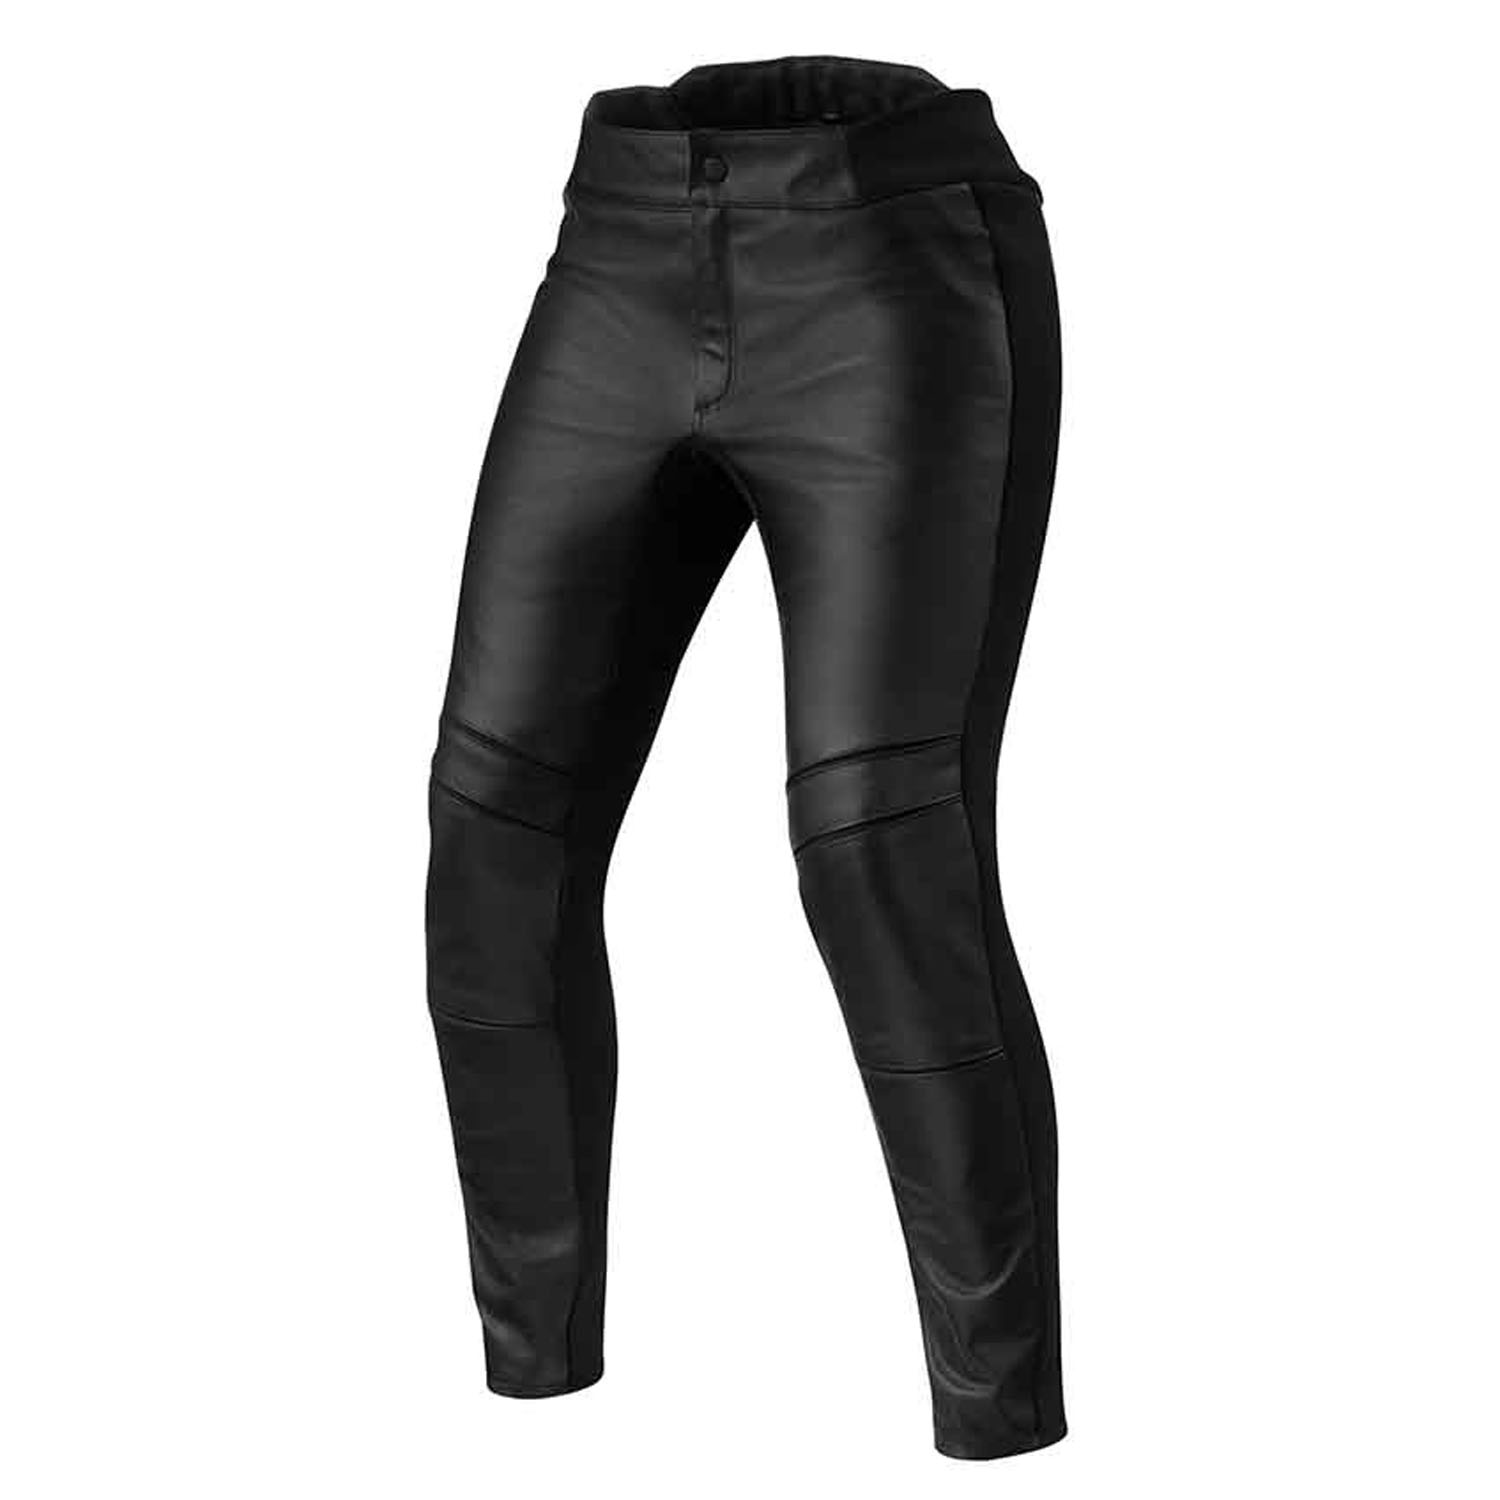 Image of REV'IT! Maci Ladies Black Long Motorcycle Pants Size 38 EN